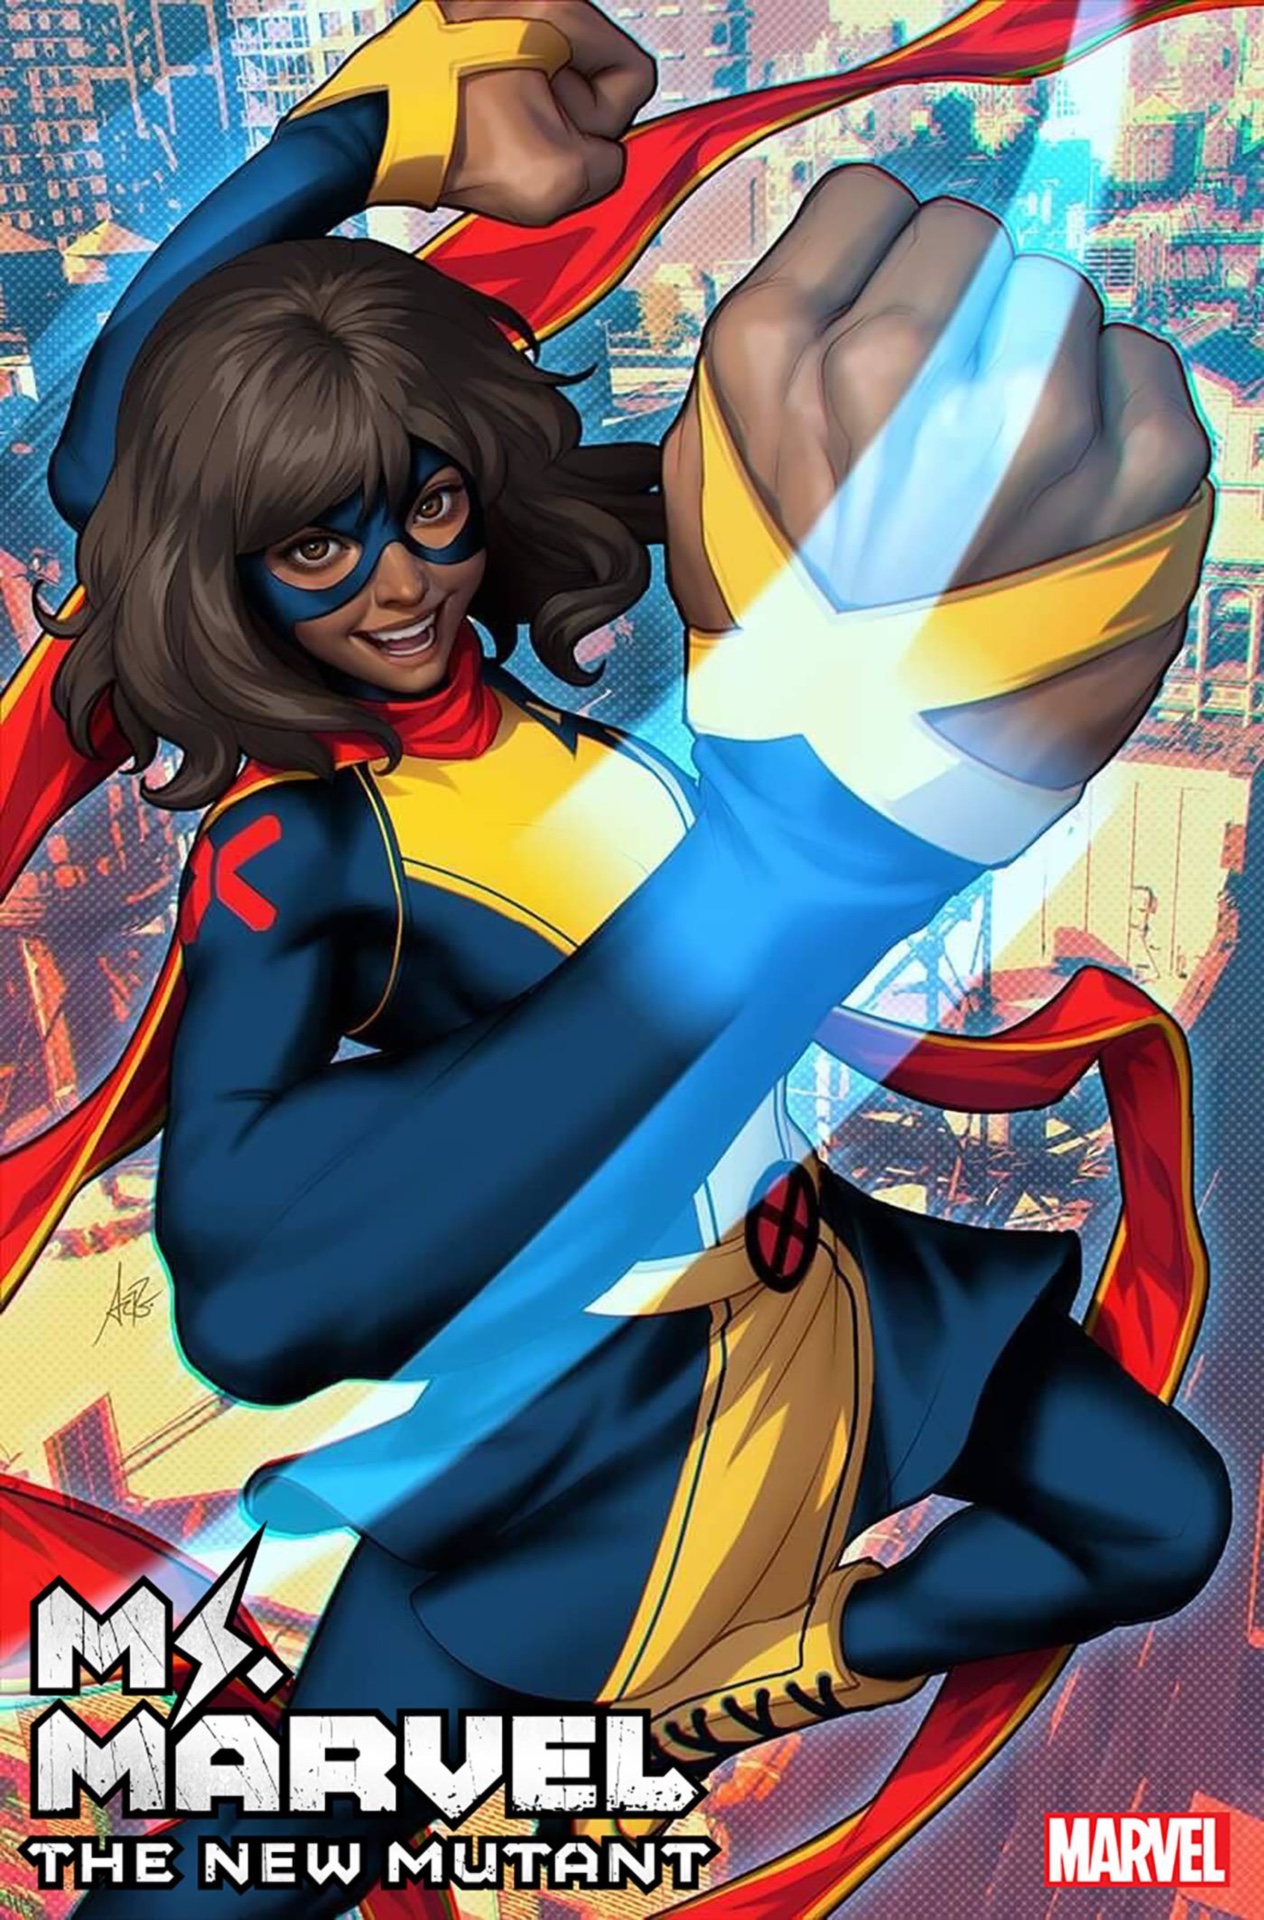 Couverture de Ms. Marvel : Le nouveau mutant #1